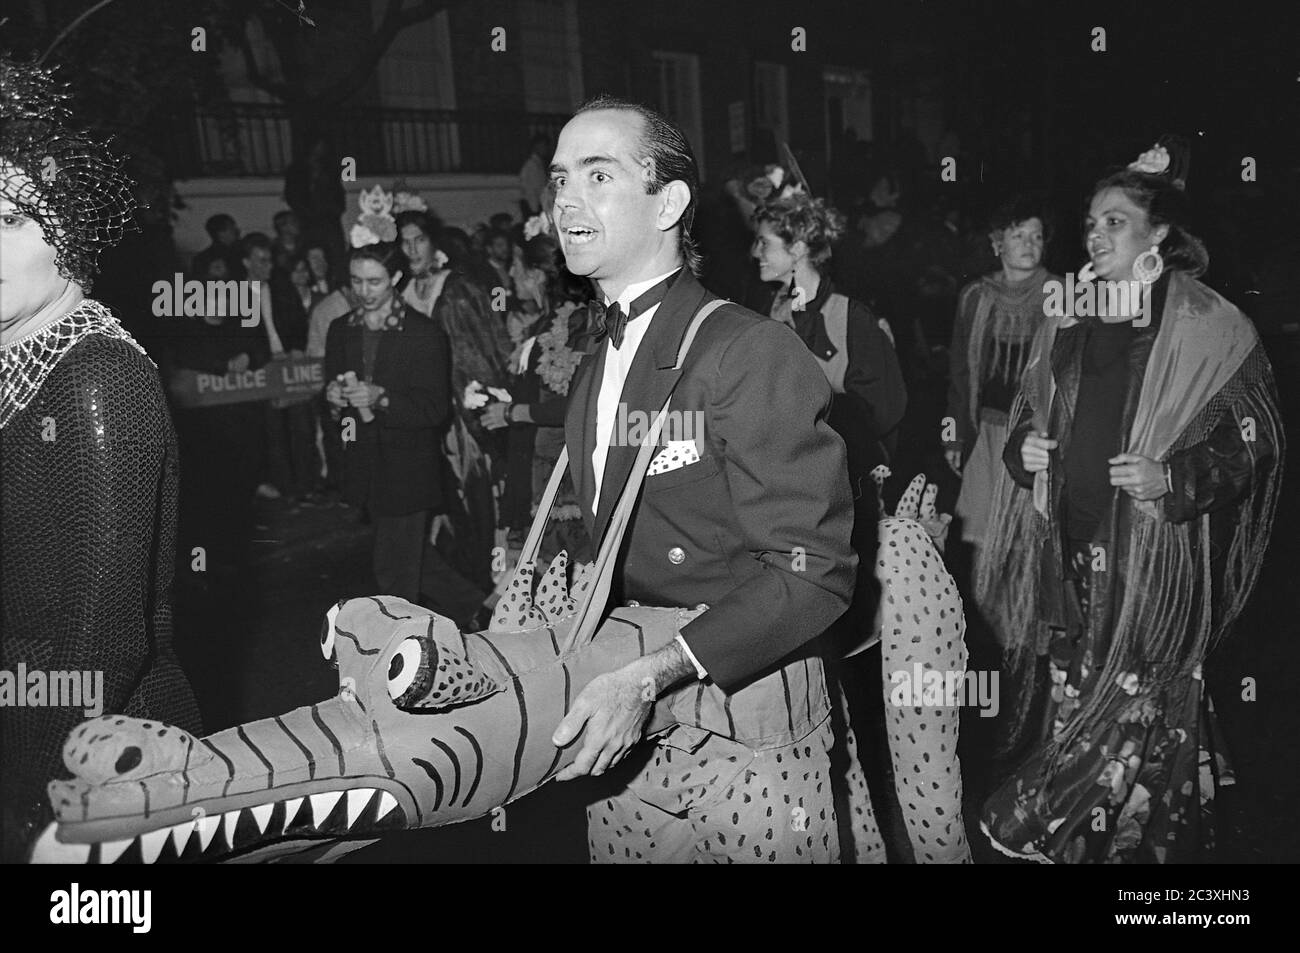 Uomo in tux e alligatore alla Greenwich Village Halloween Parade, New York City, USA negli anni '80 fotografato con film in bianco e nero di notte. Foto Stock